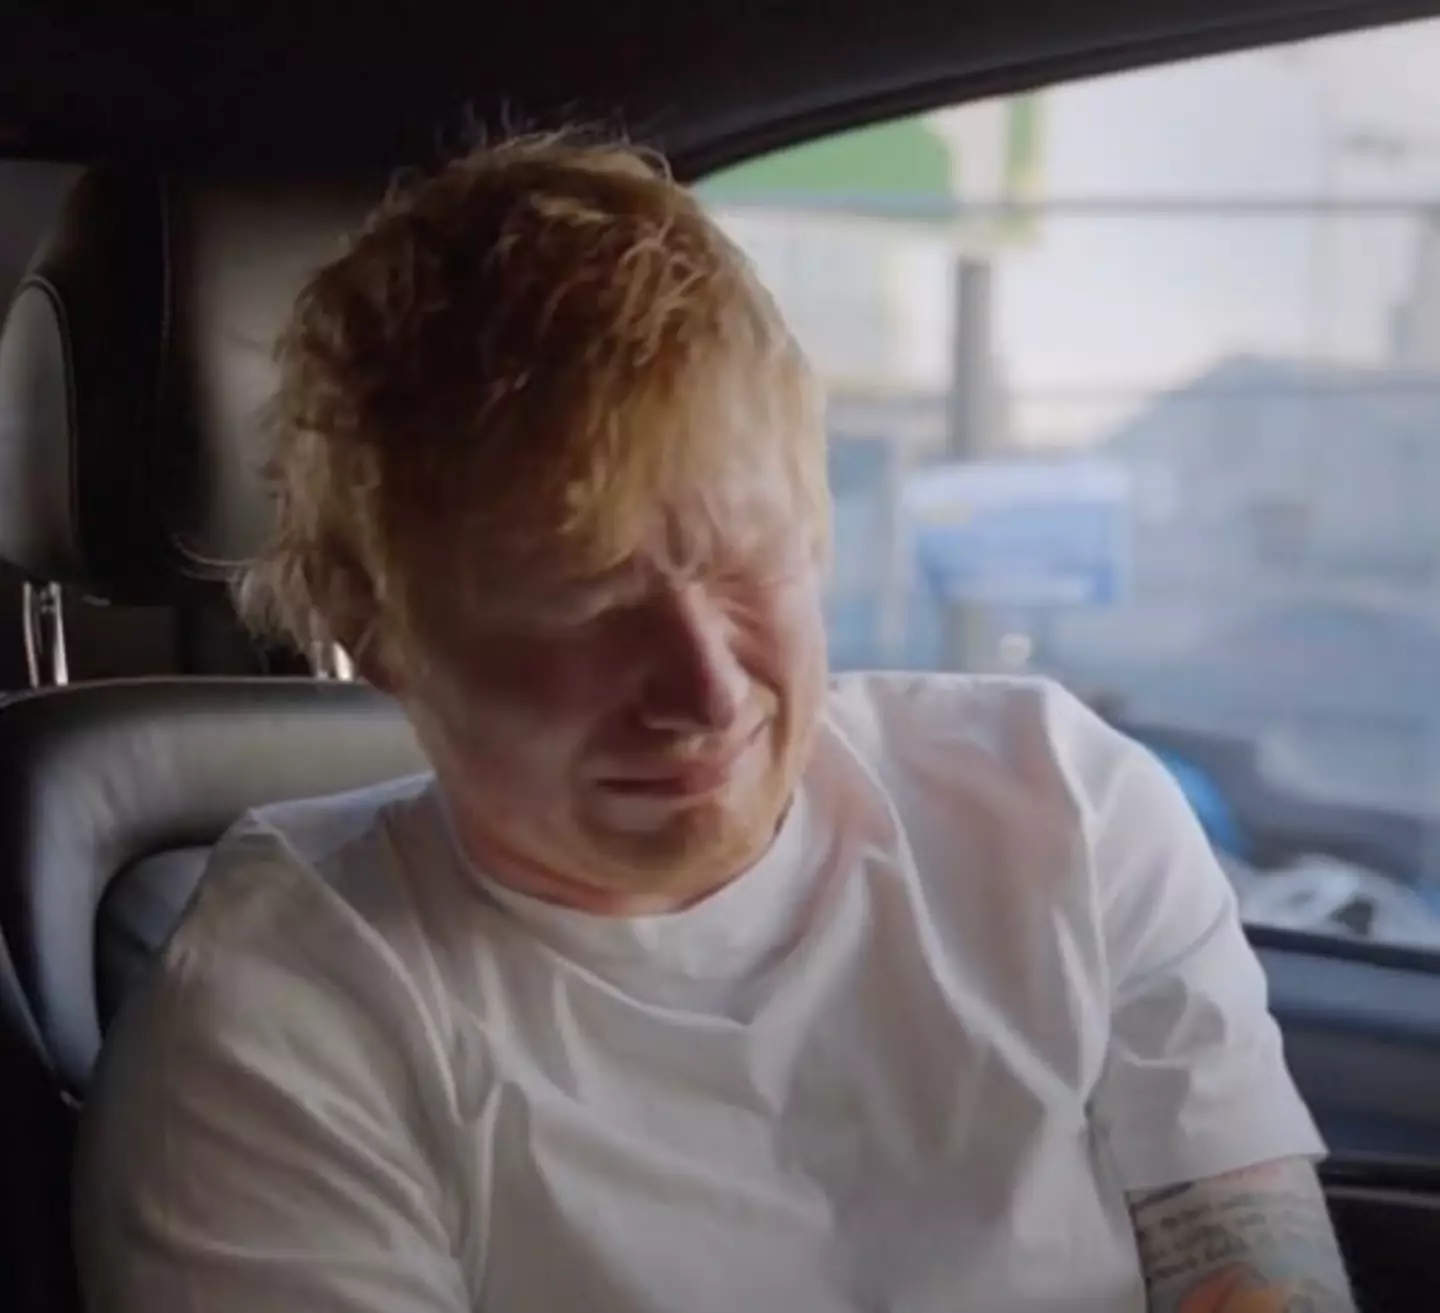 Sheeran breaks down in tears in the documentary.